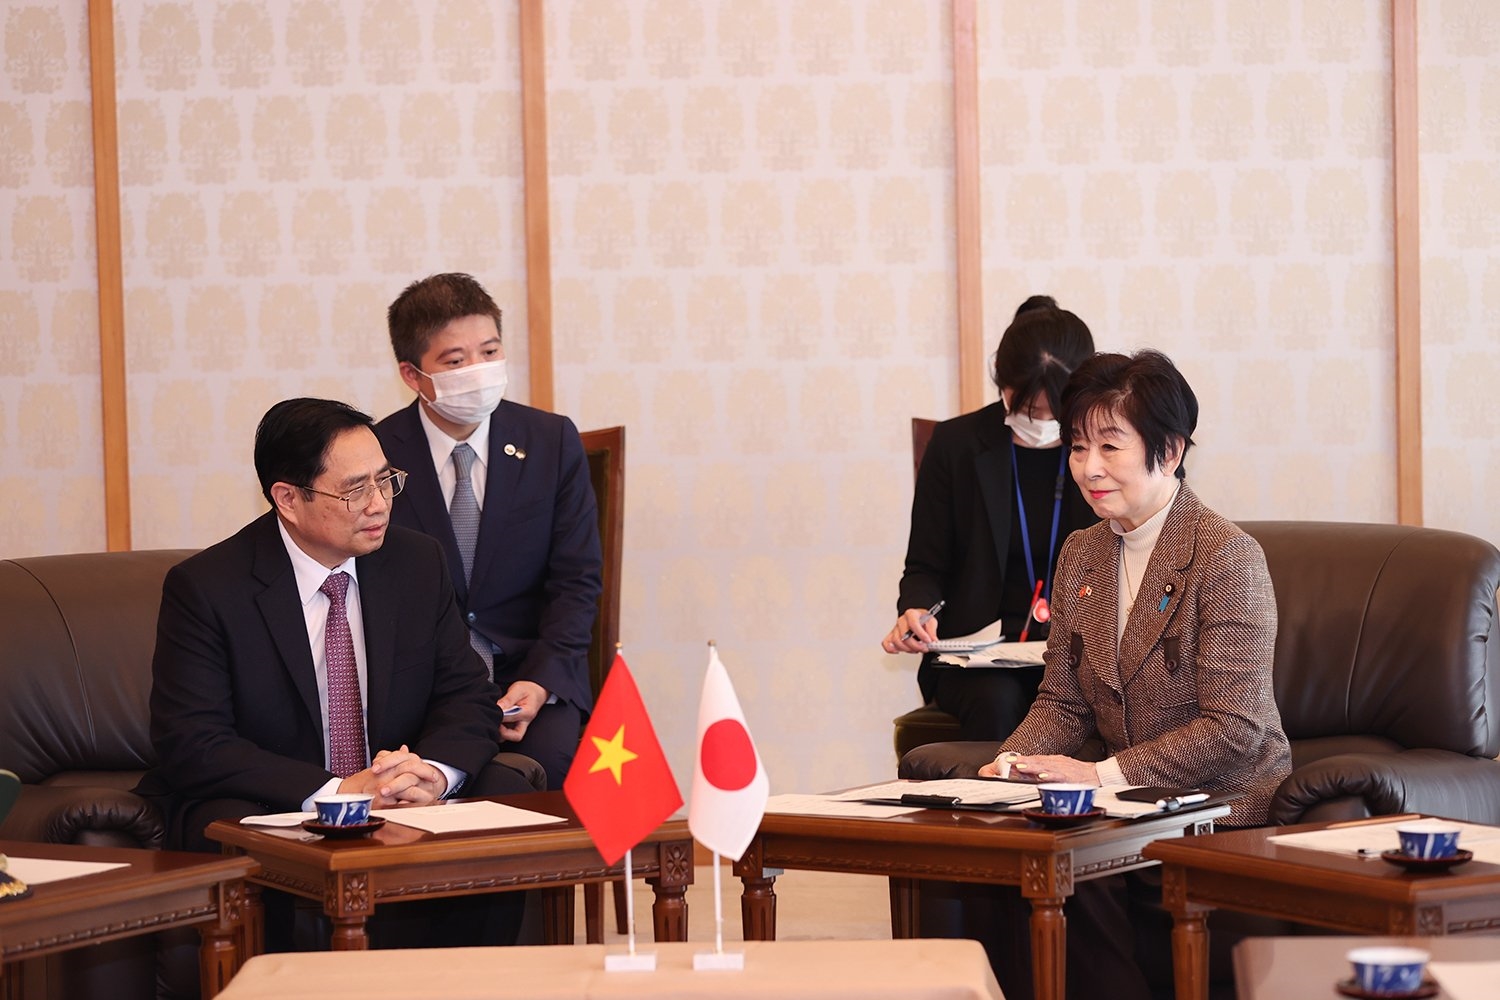 Tại cuộc hội kiến, Chủ tịch Thượng viện Nhật Bản khẳng định coi trọng tăng cường hơn nữa quan hệ hợp tác sâu rộng, toàn diện giữa hai nước và sẽ ủng hộ Chính phủ Nhật Bản tiếp tục hợp tác và hỗ trợ Việt Nam trong phát triển kinh tế, xã hội. Ảnh: VGP/Nhật Bắc